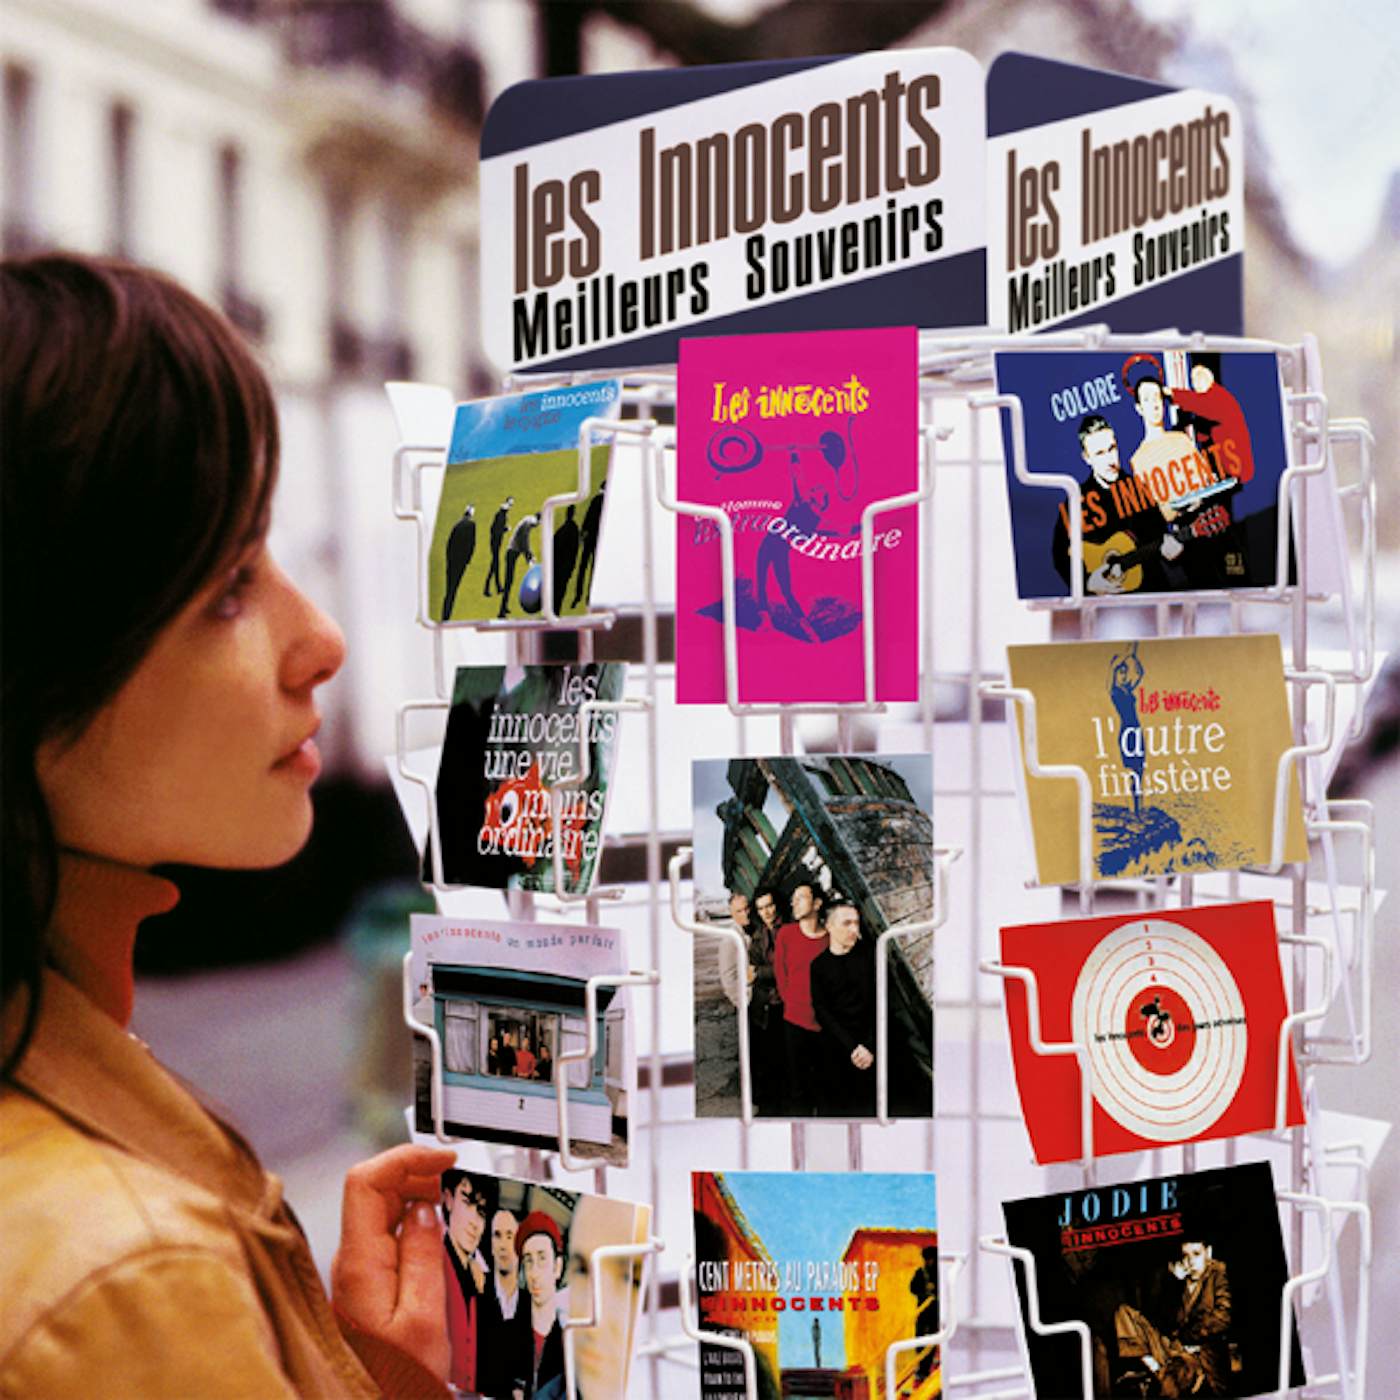 Les Innocents MEILLEURS SOUVENIRS CD